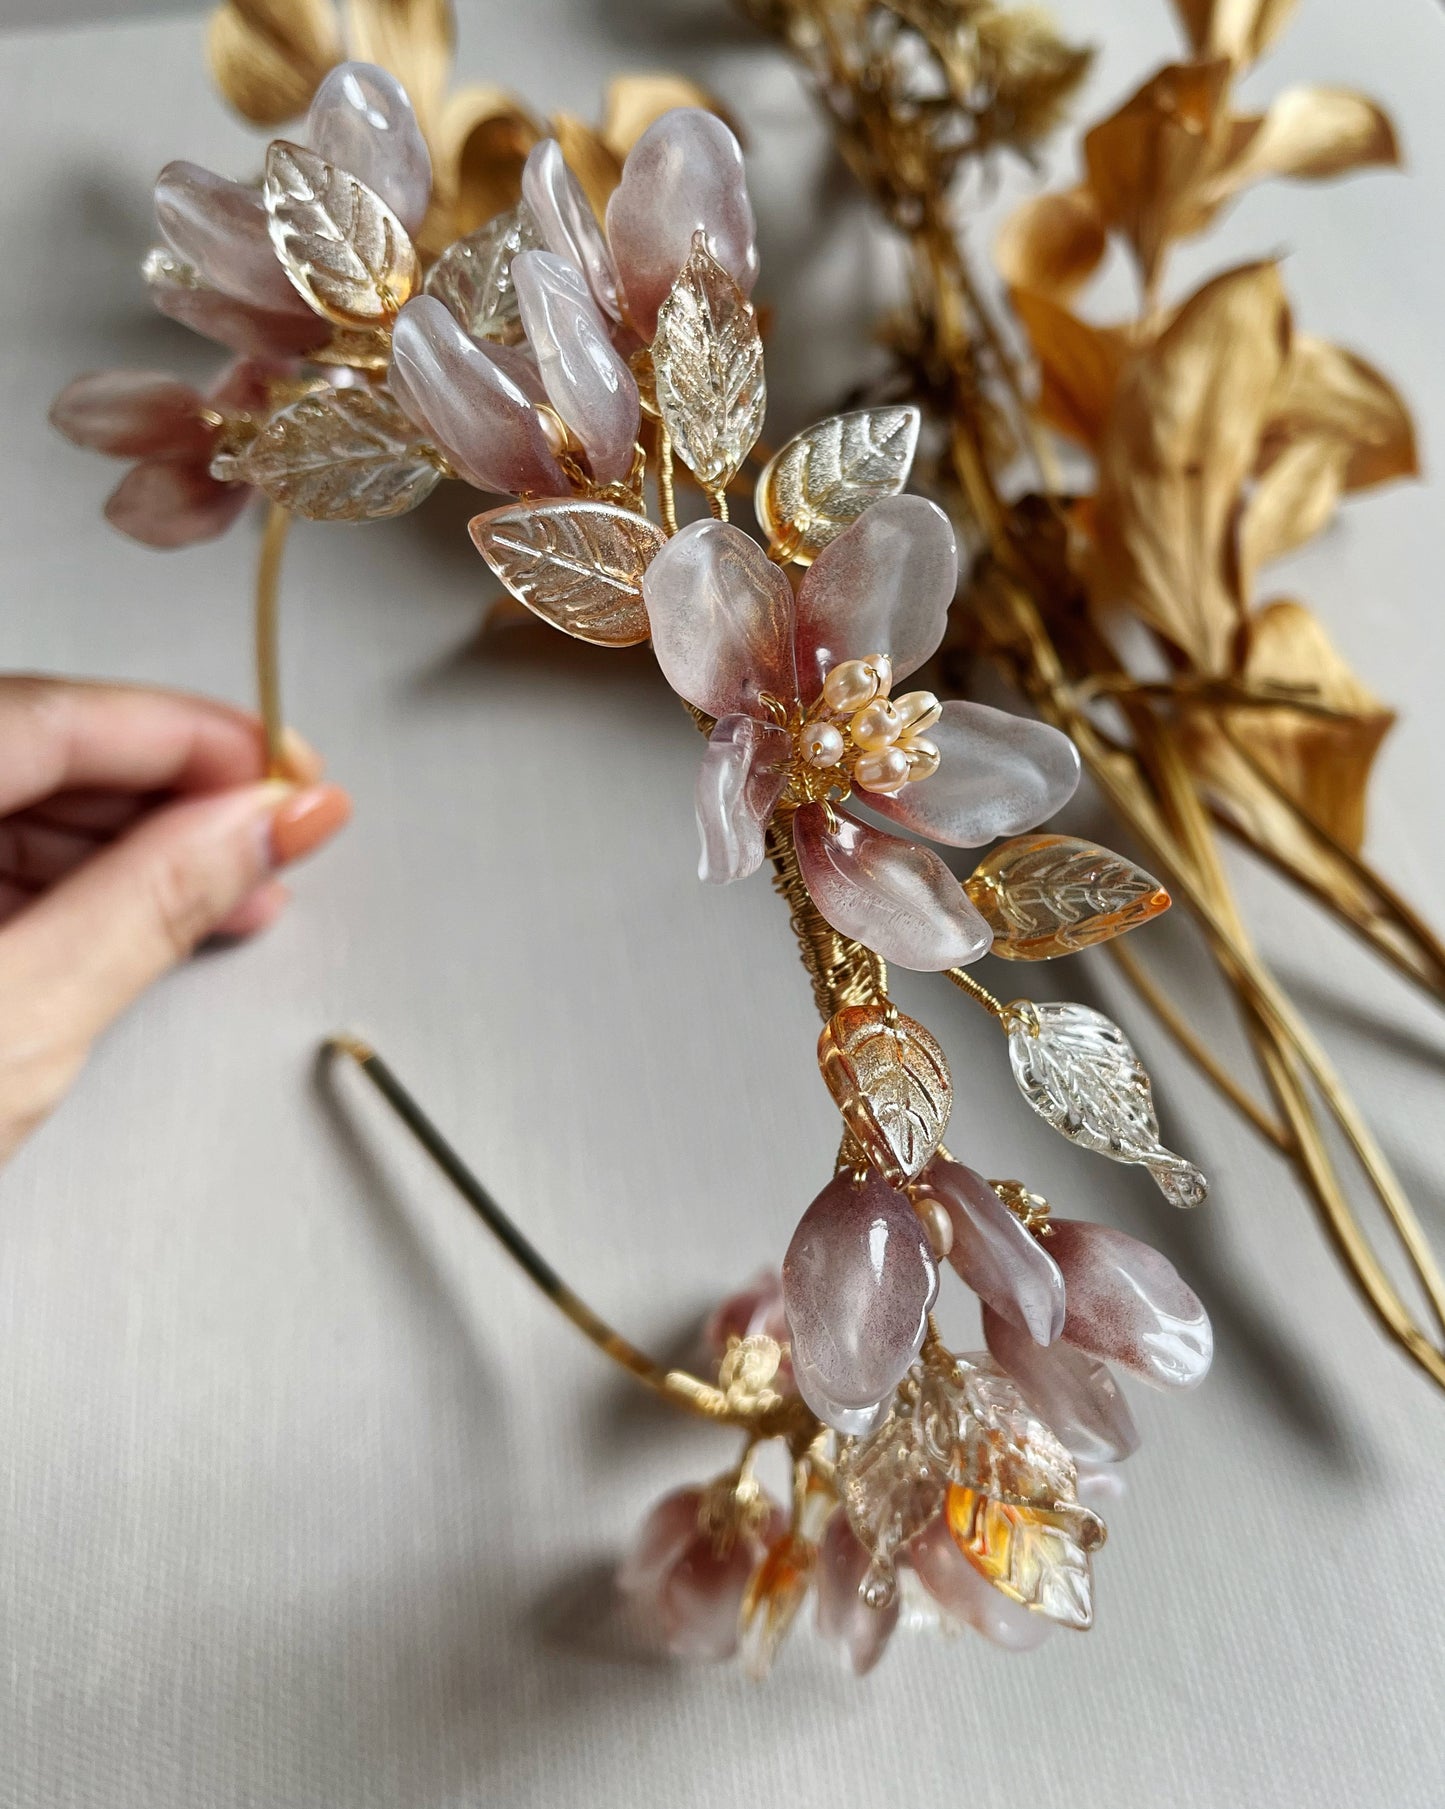 Autumn embrace silk cotton tree flower wedding tiara